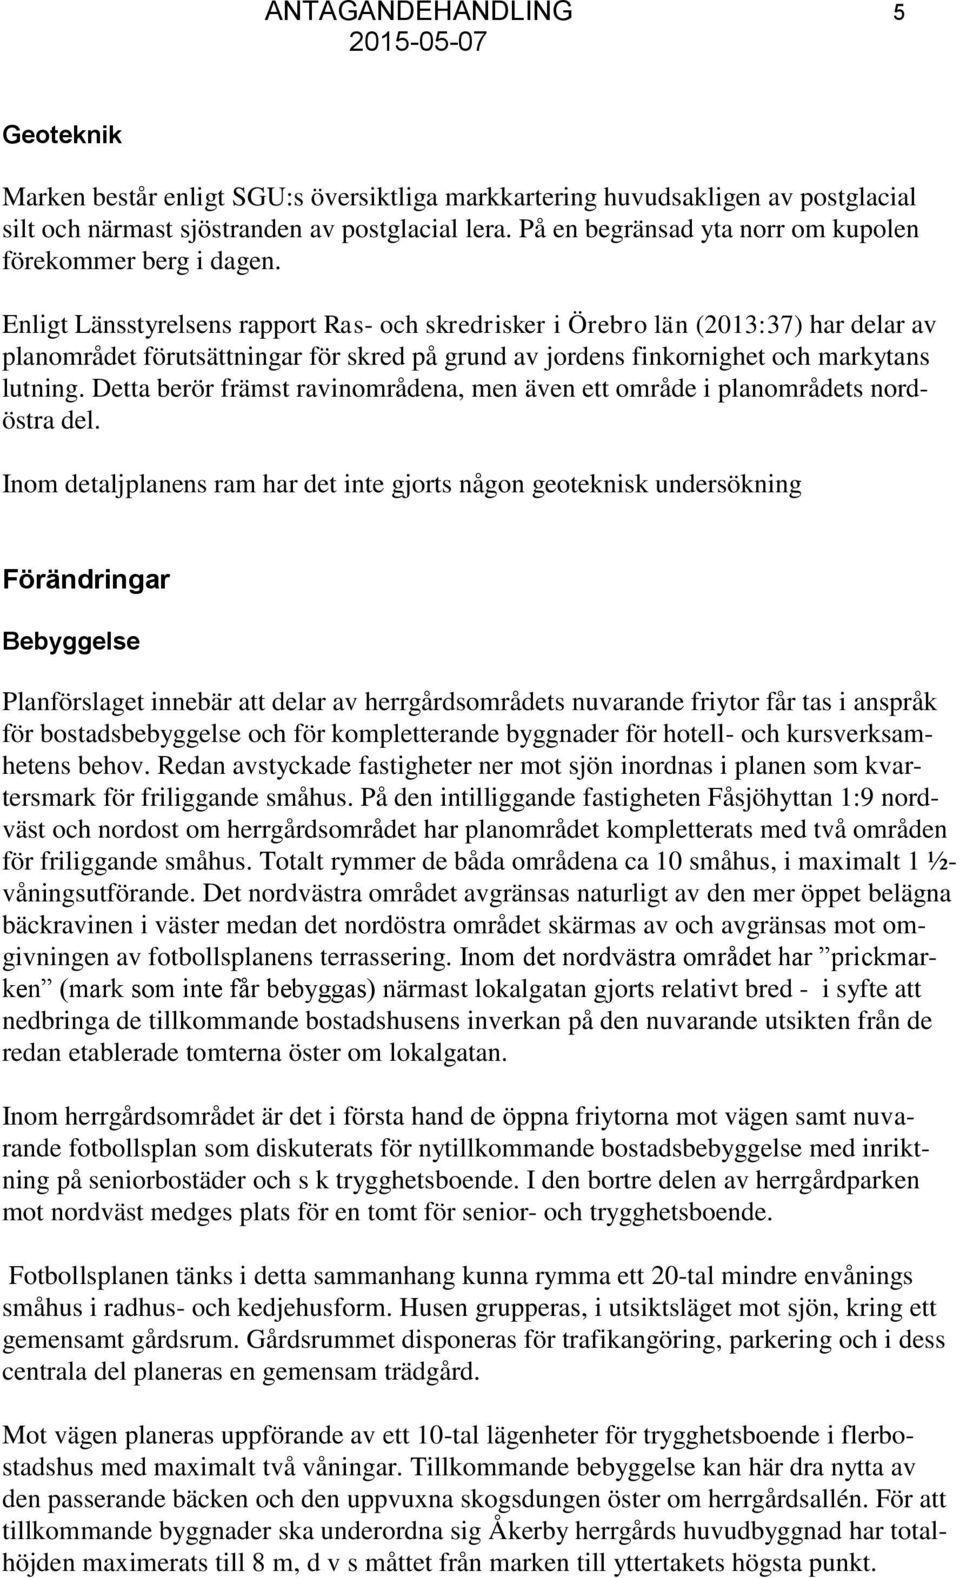 Enligt Länsstyrelsens rapport Ras- och skredrisker i Örebro län (2013:37) har delar av planområdet förutsättningar för skred på grund av jordens finkornighet och markytans lutning.